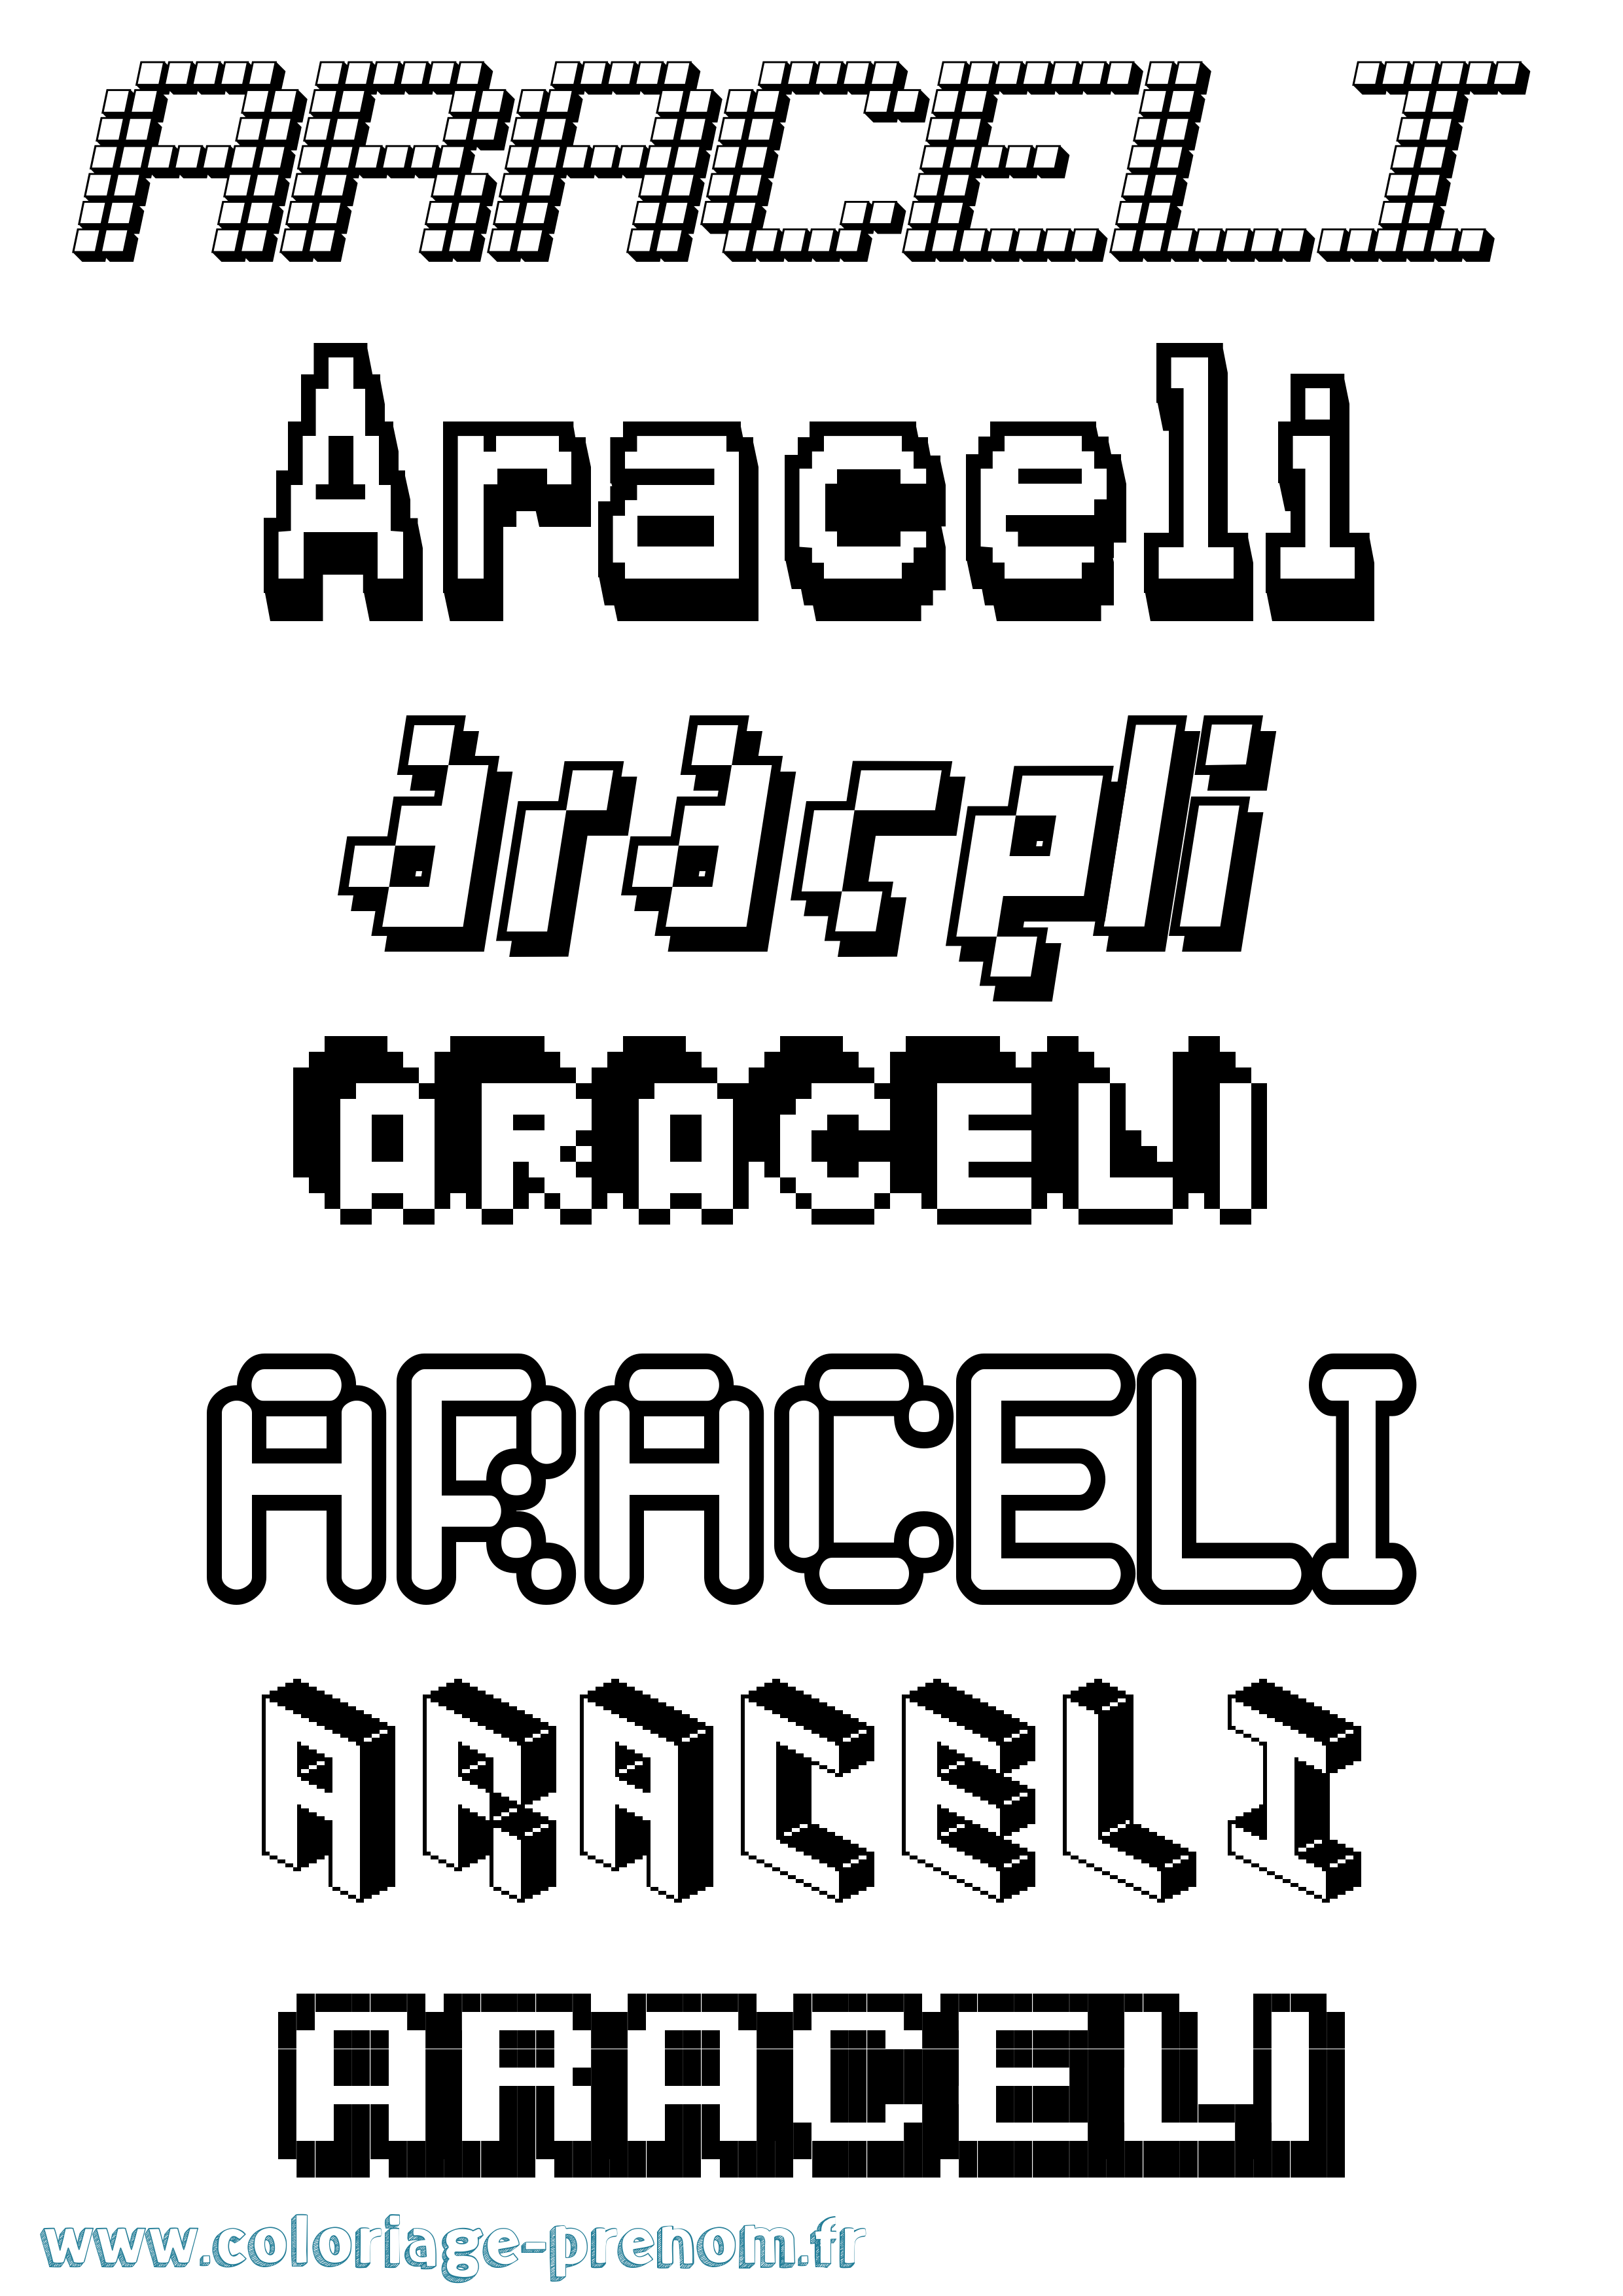 Coloriage prénom Araceli Pixel